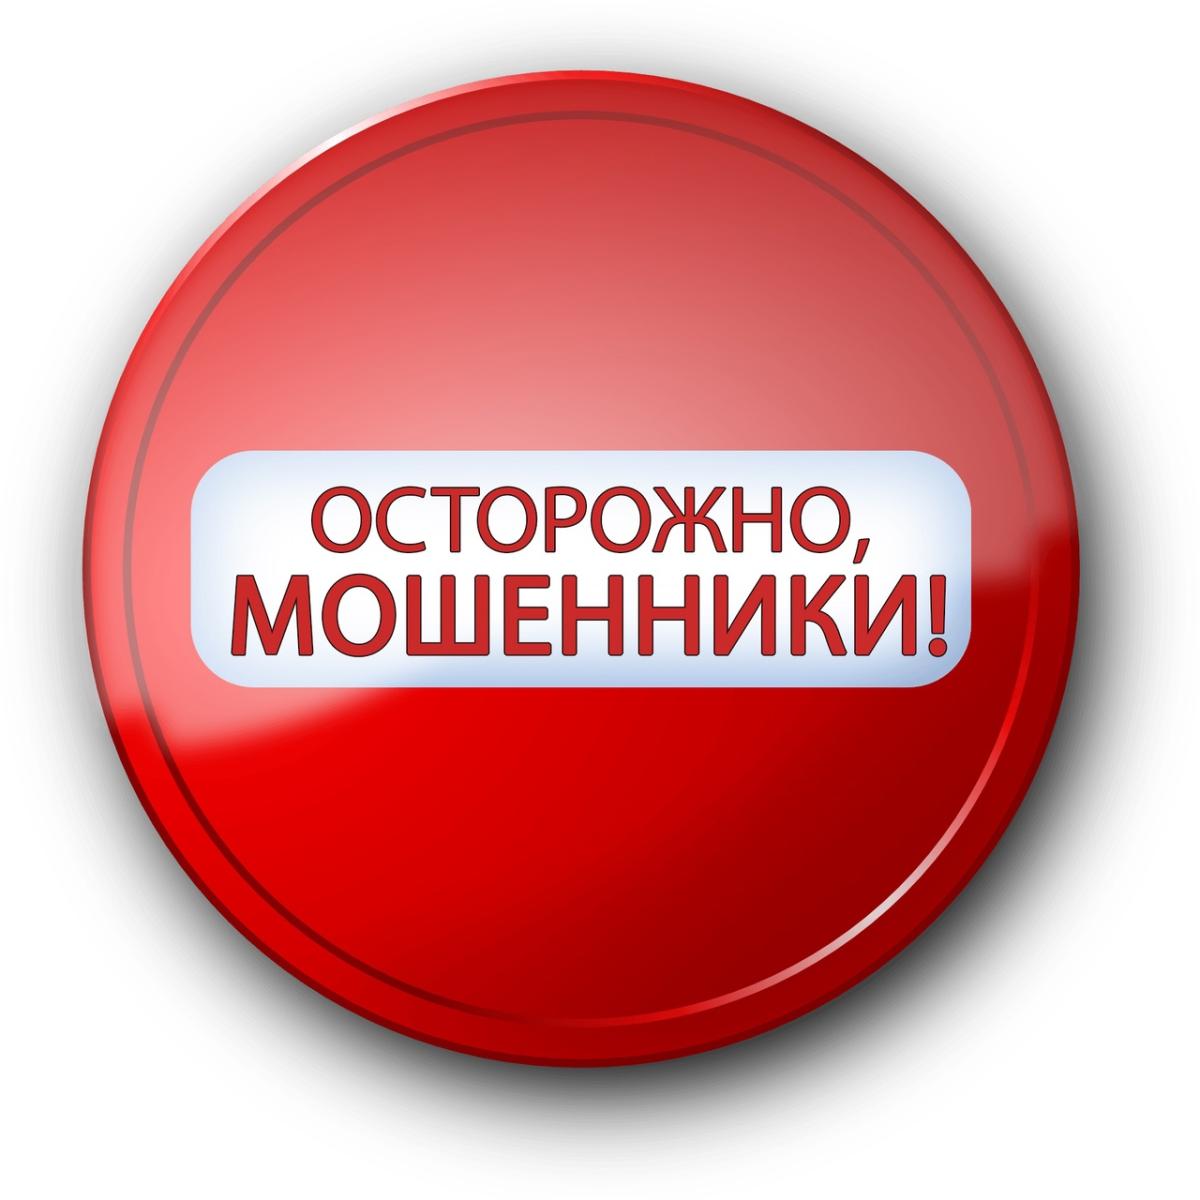 Пять пенсионерок из Саранска обогатили мошенников на 1 миллион рублей